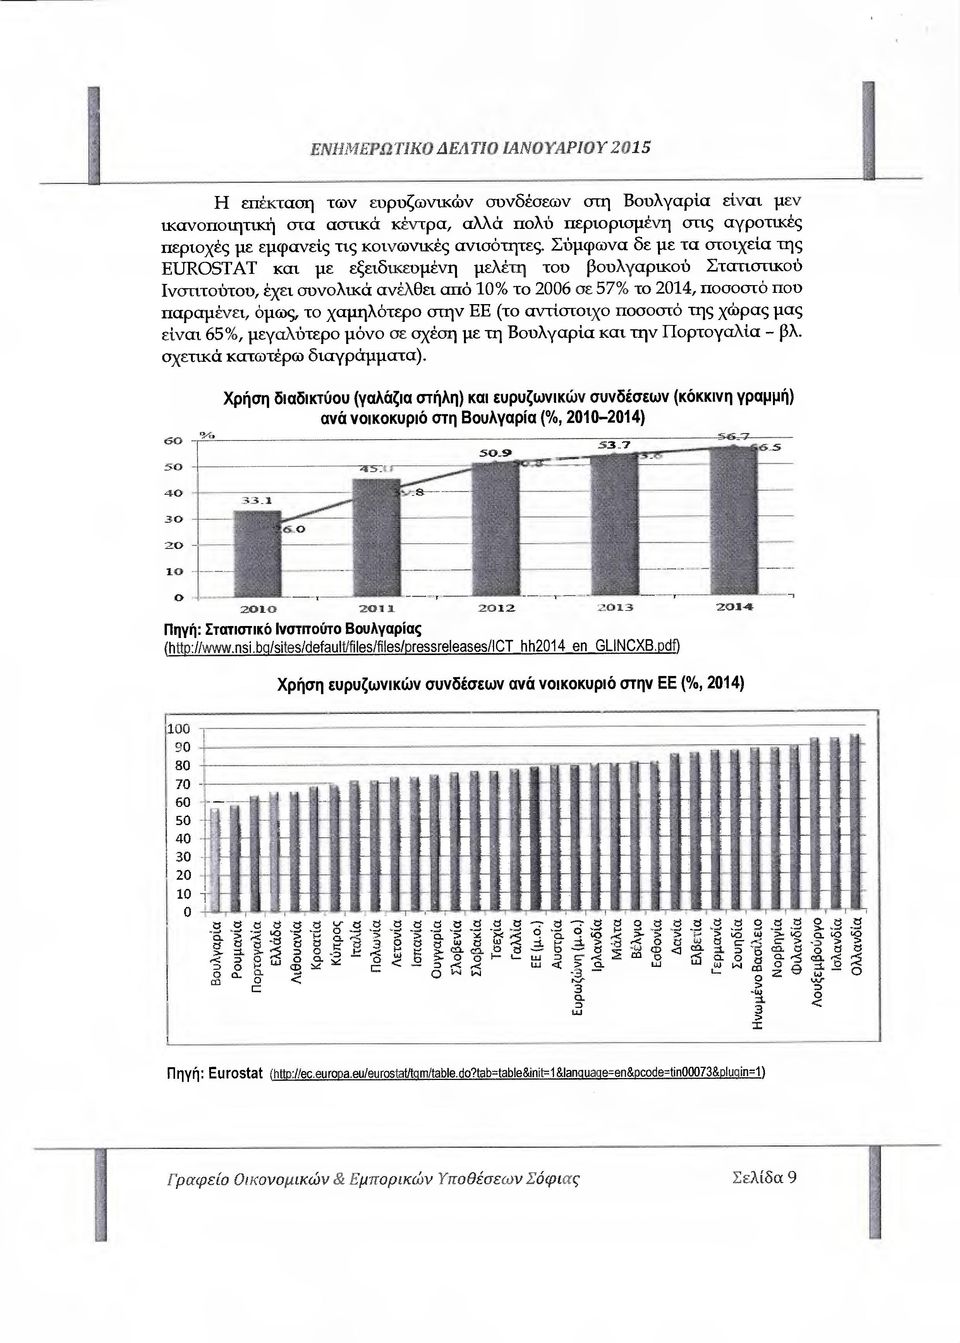 Σύµφωνα δε µε τα στοιχεία της EUROSTAT και µε εξειδικευµένη µελέτη του βουλγαρικού Στατιστικού Ινσιιτούτου, έχει συνολικά ανέλθει από 10% το 2006 σε 57% το 2014, ποσοστό που παραµένει, όµως, το